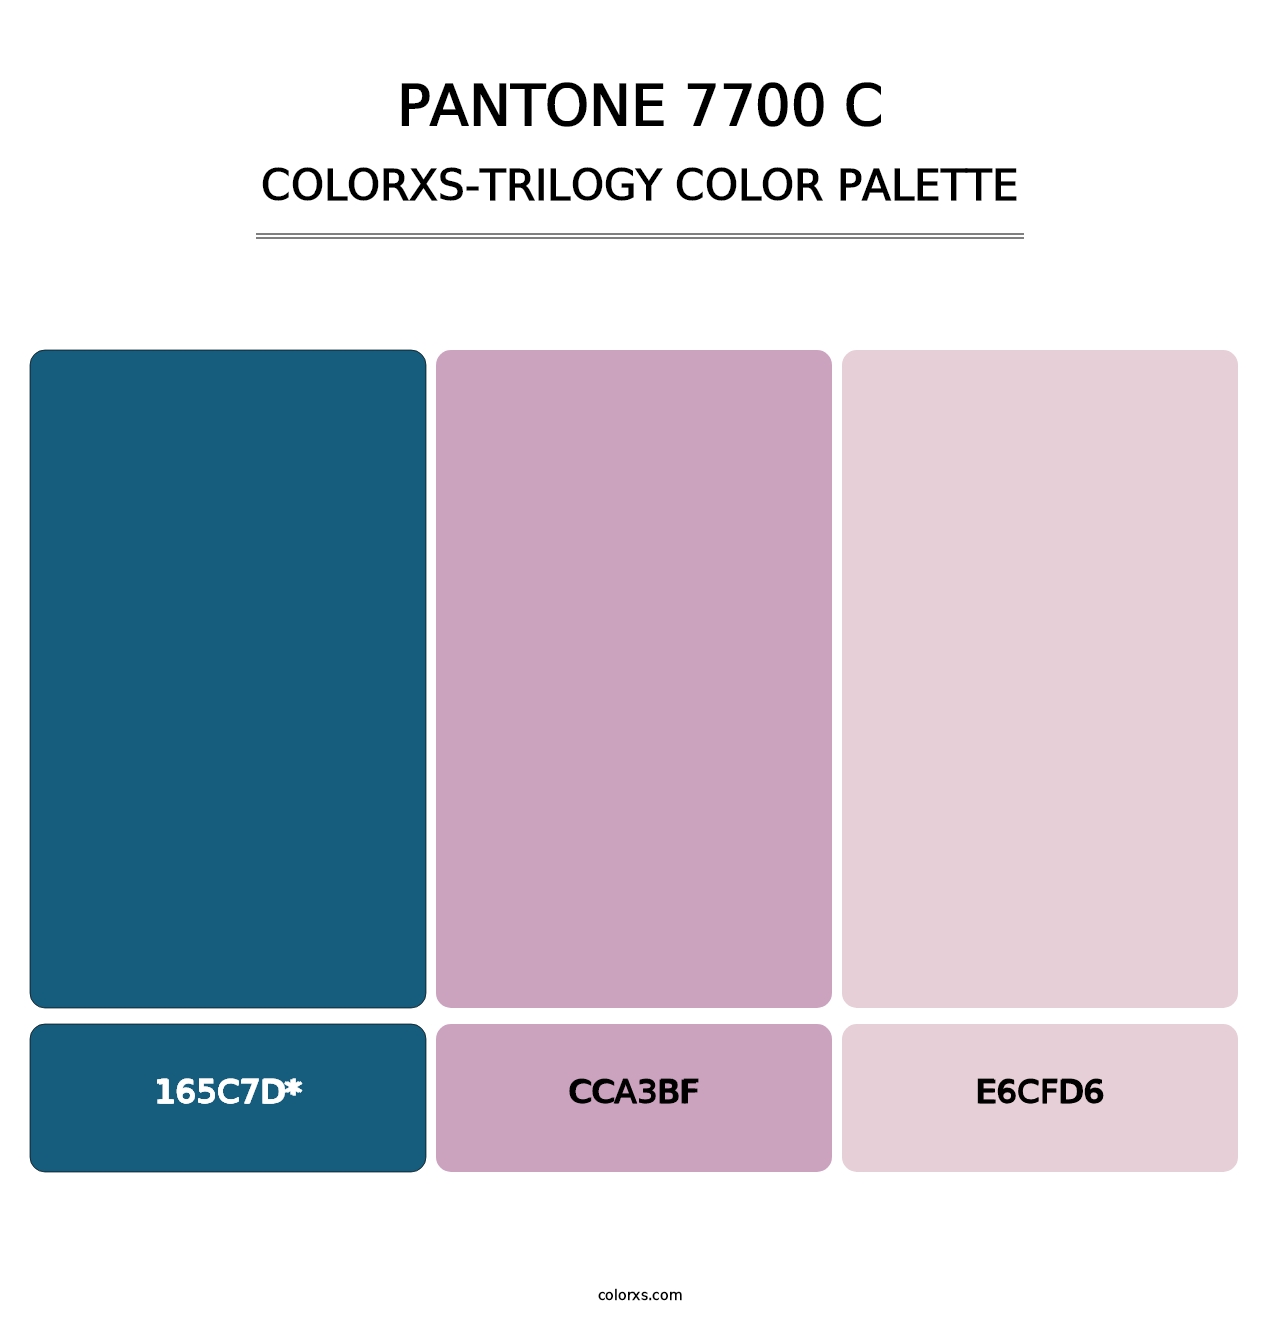 PANTONE 7700 C - Colorxs Trilogy Palette